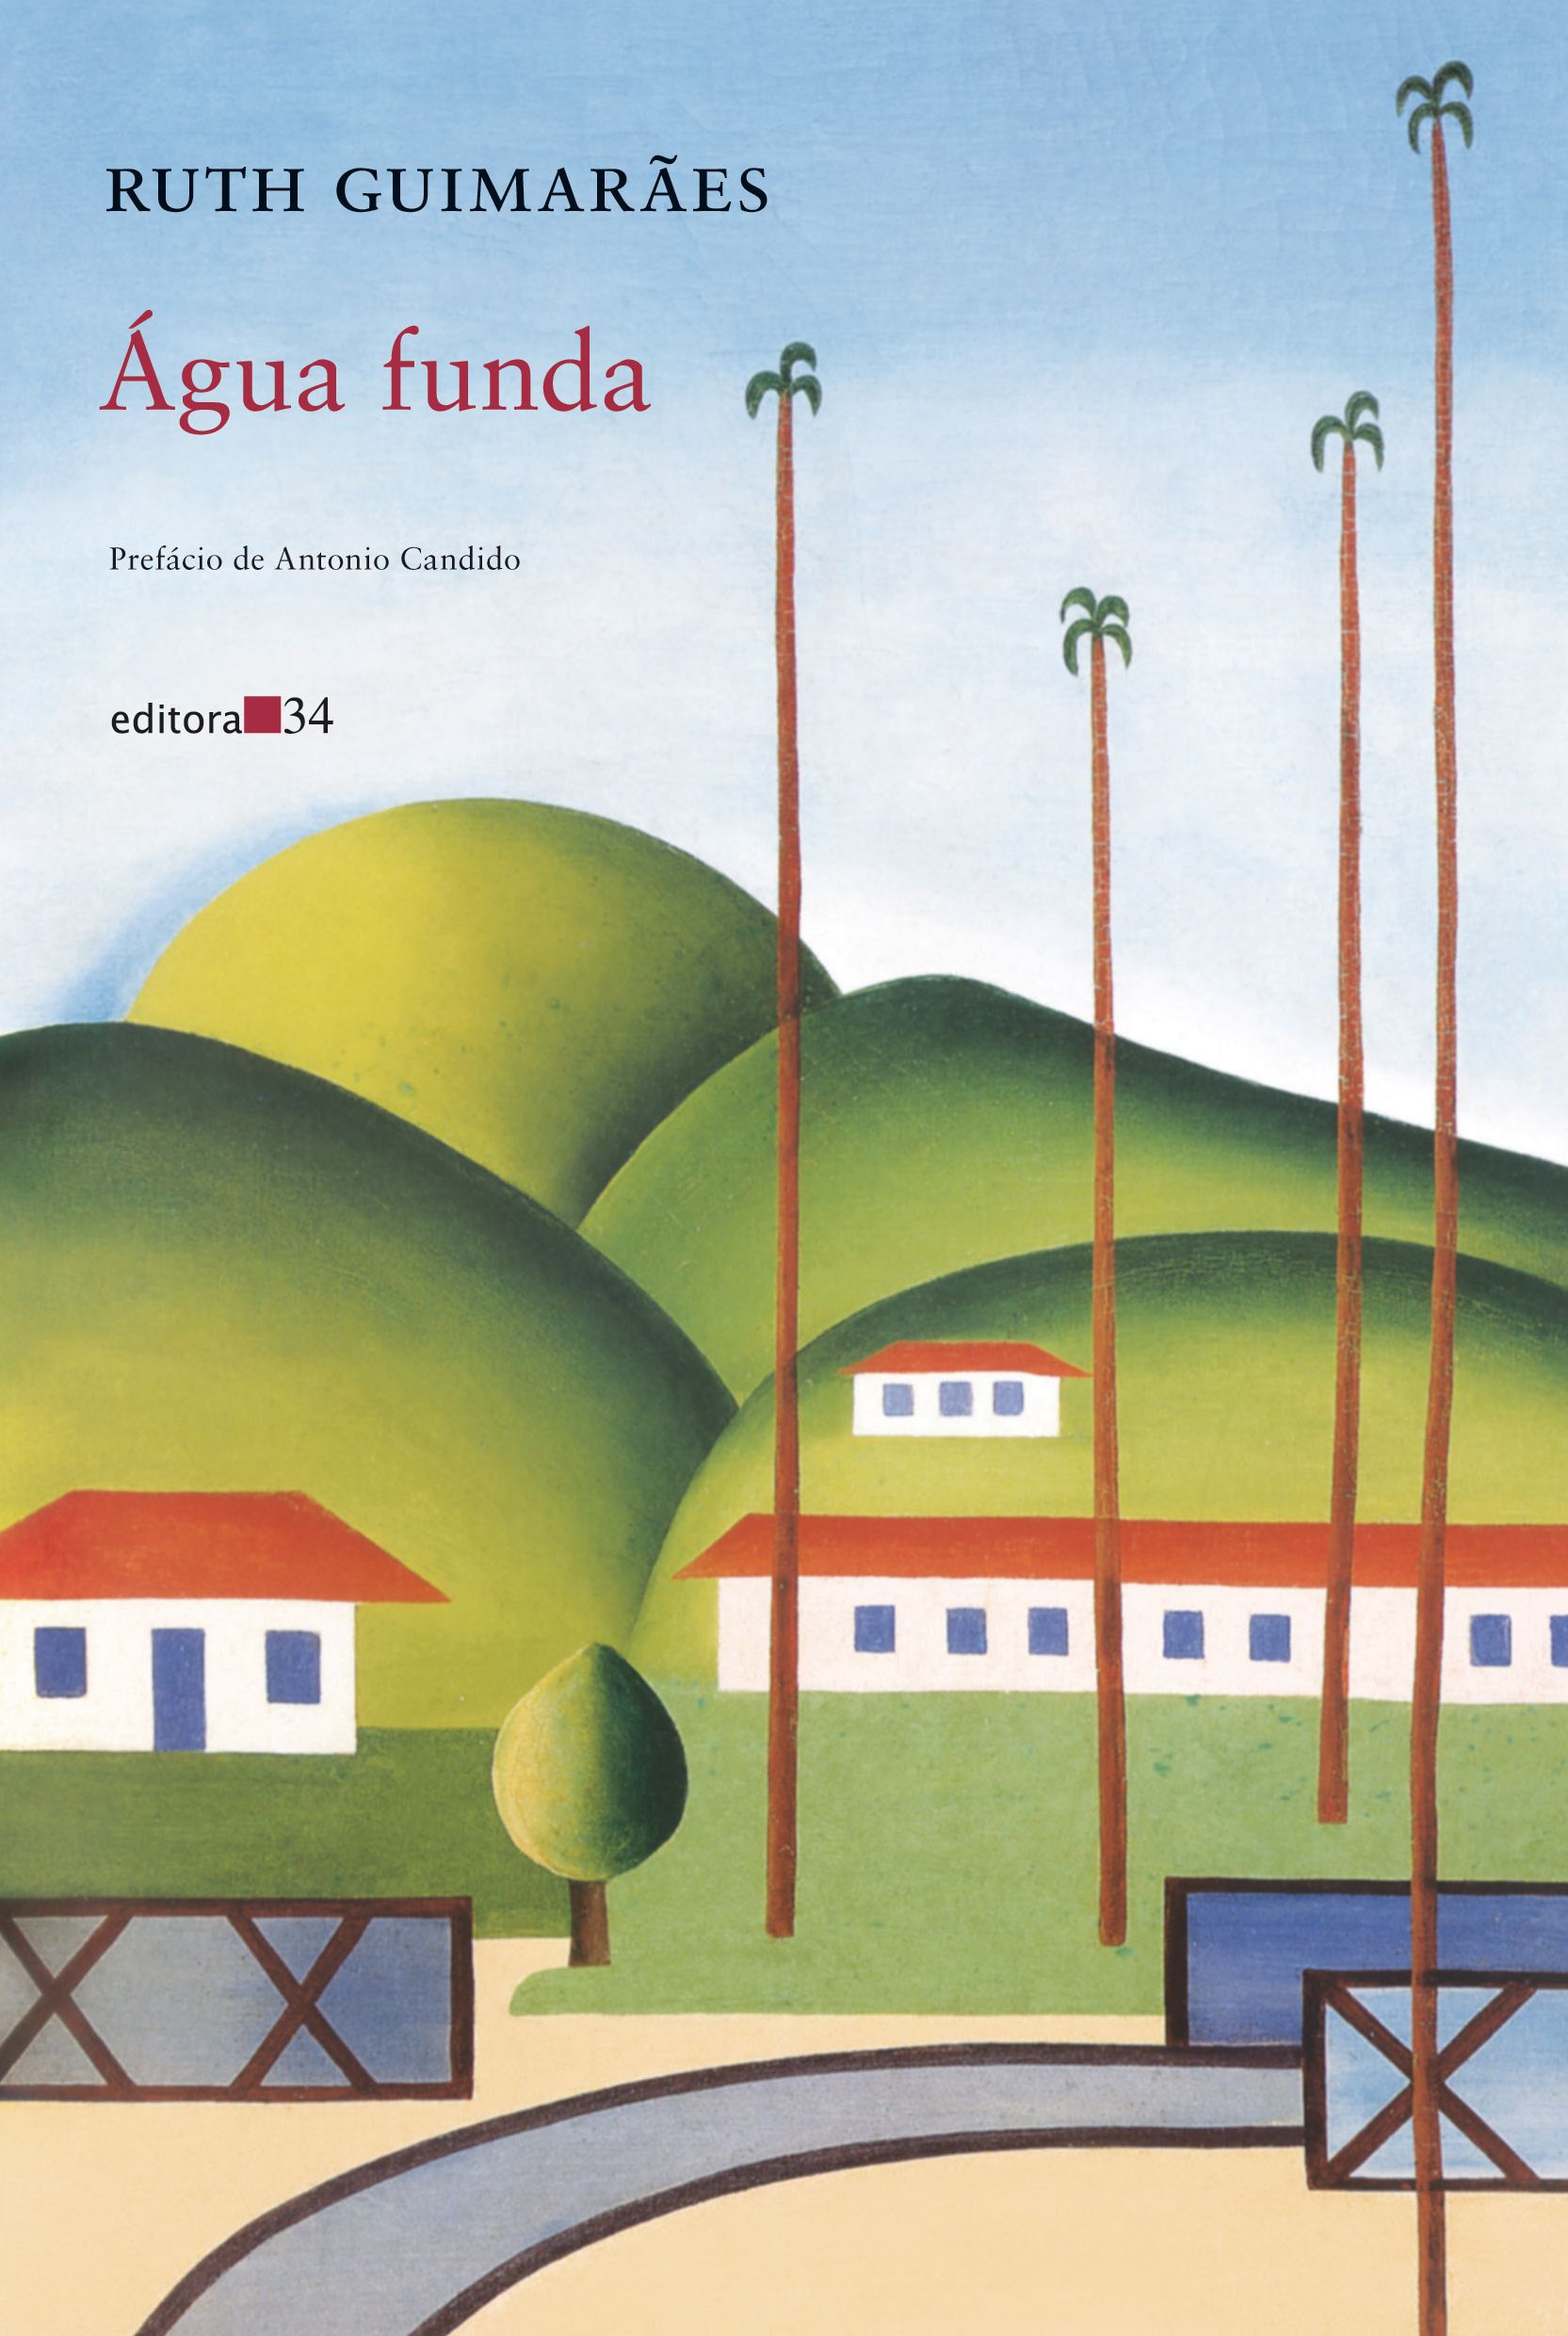 Imagem da capa do livro com ilustração de paisagem com céu azul, montanhas verdes, casas brancas com telhado vermelho e coqueiros altos.